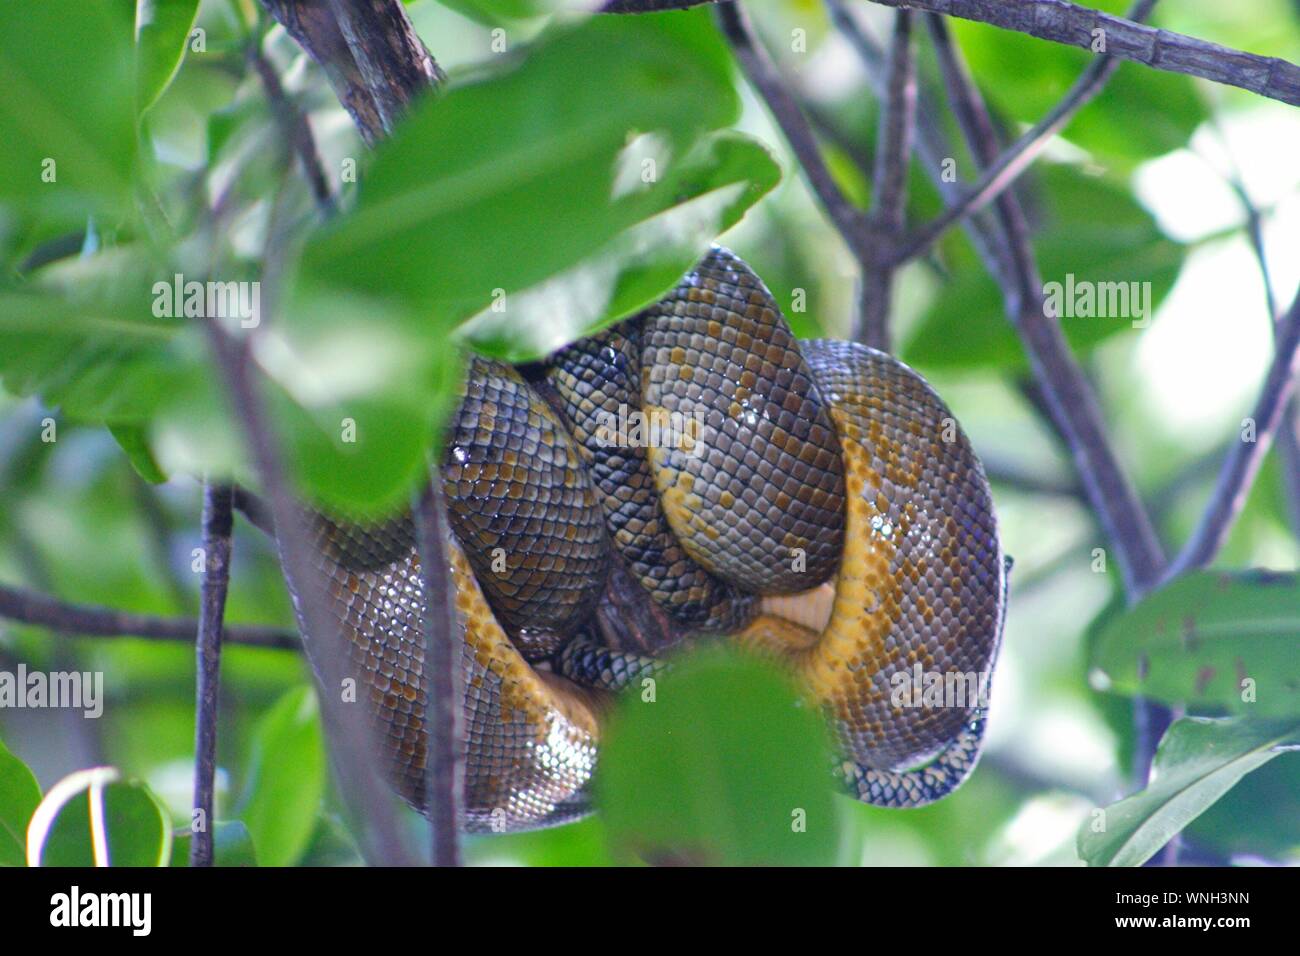 Serpiente enrollada en el árbol fotografías e imágenes de alta resolución -  Alamy